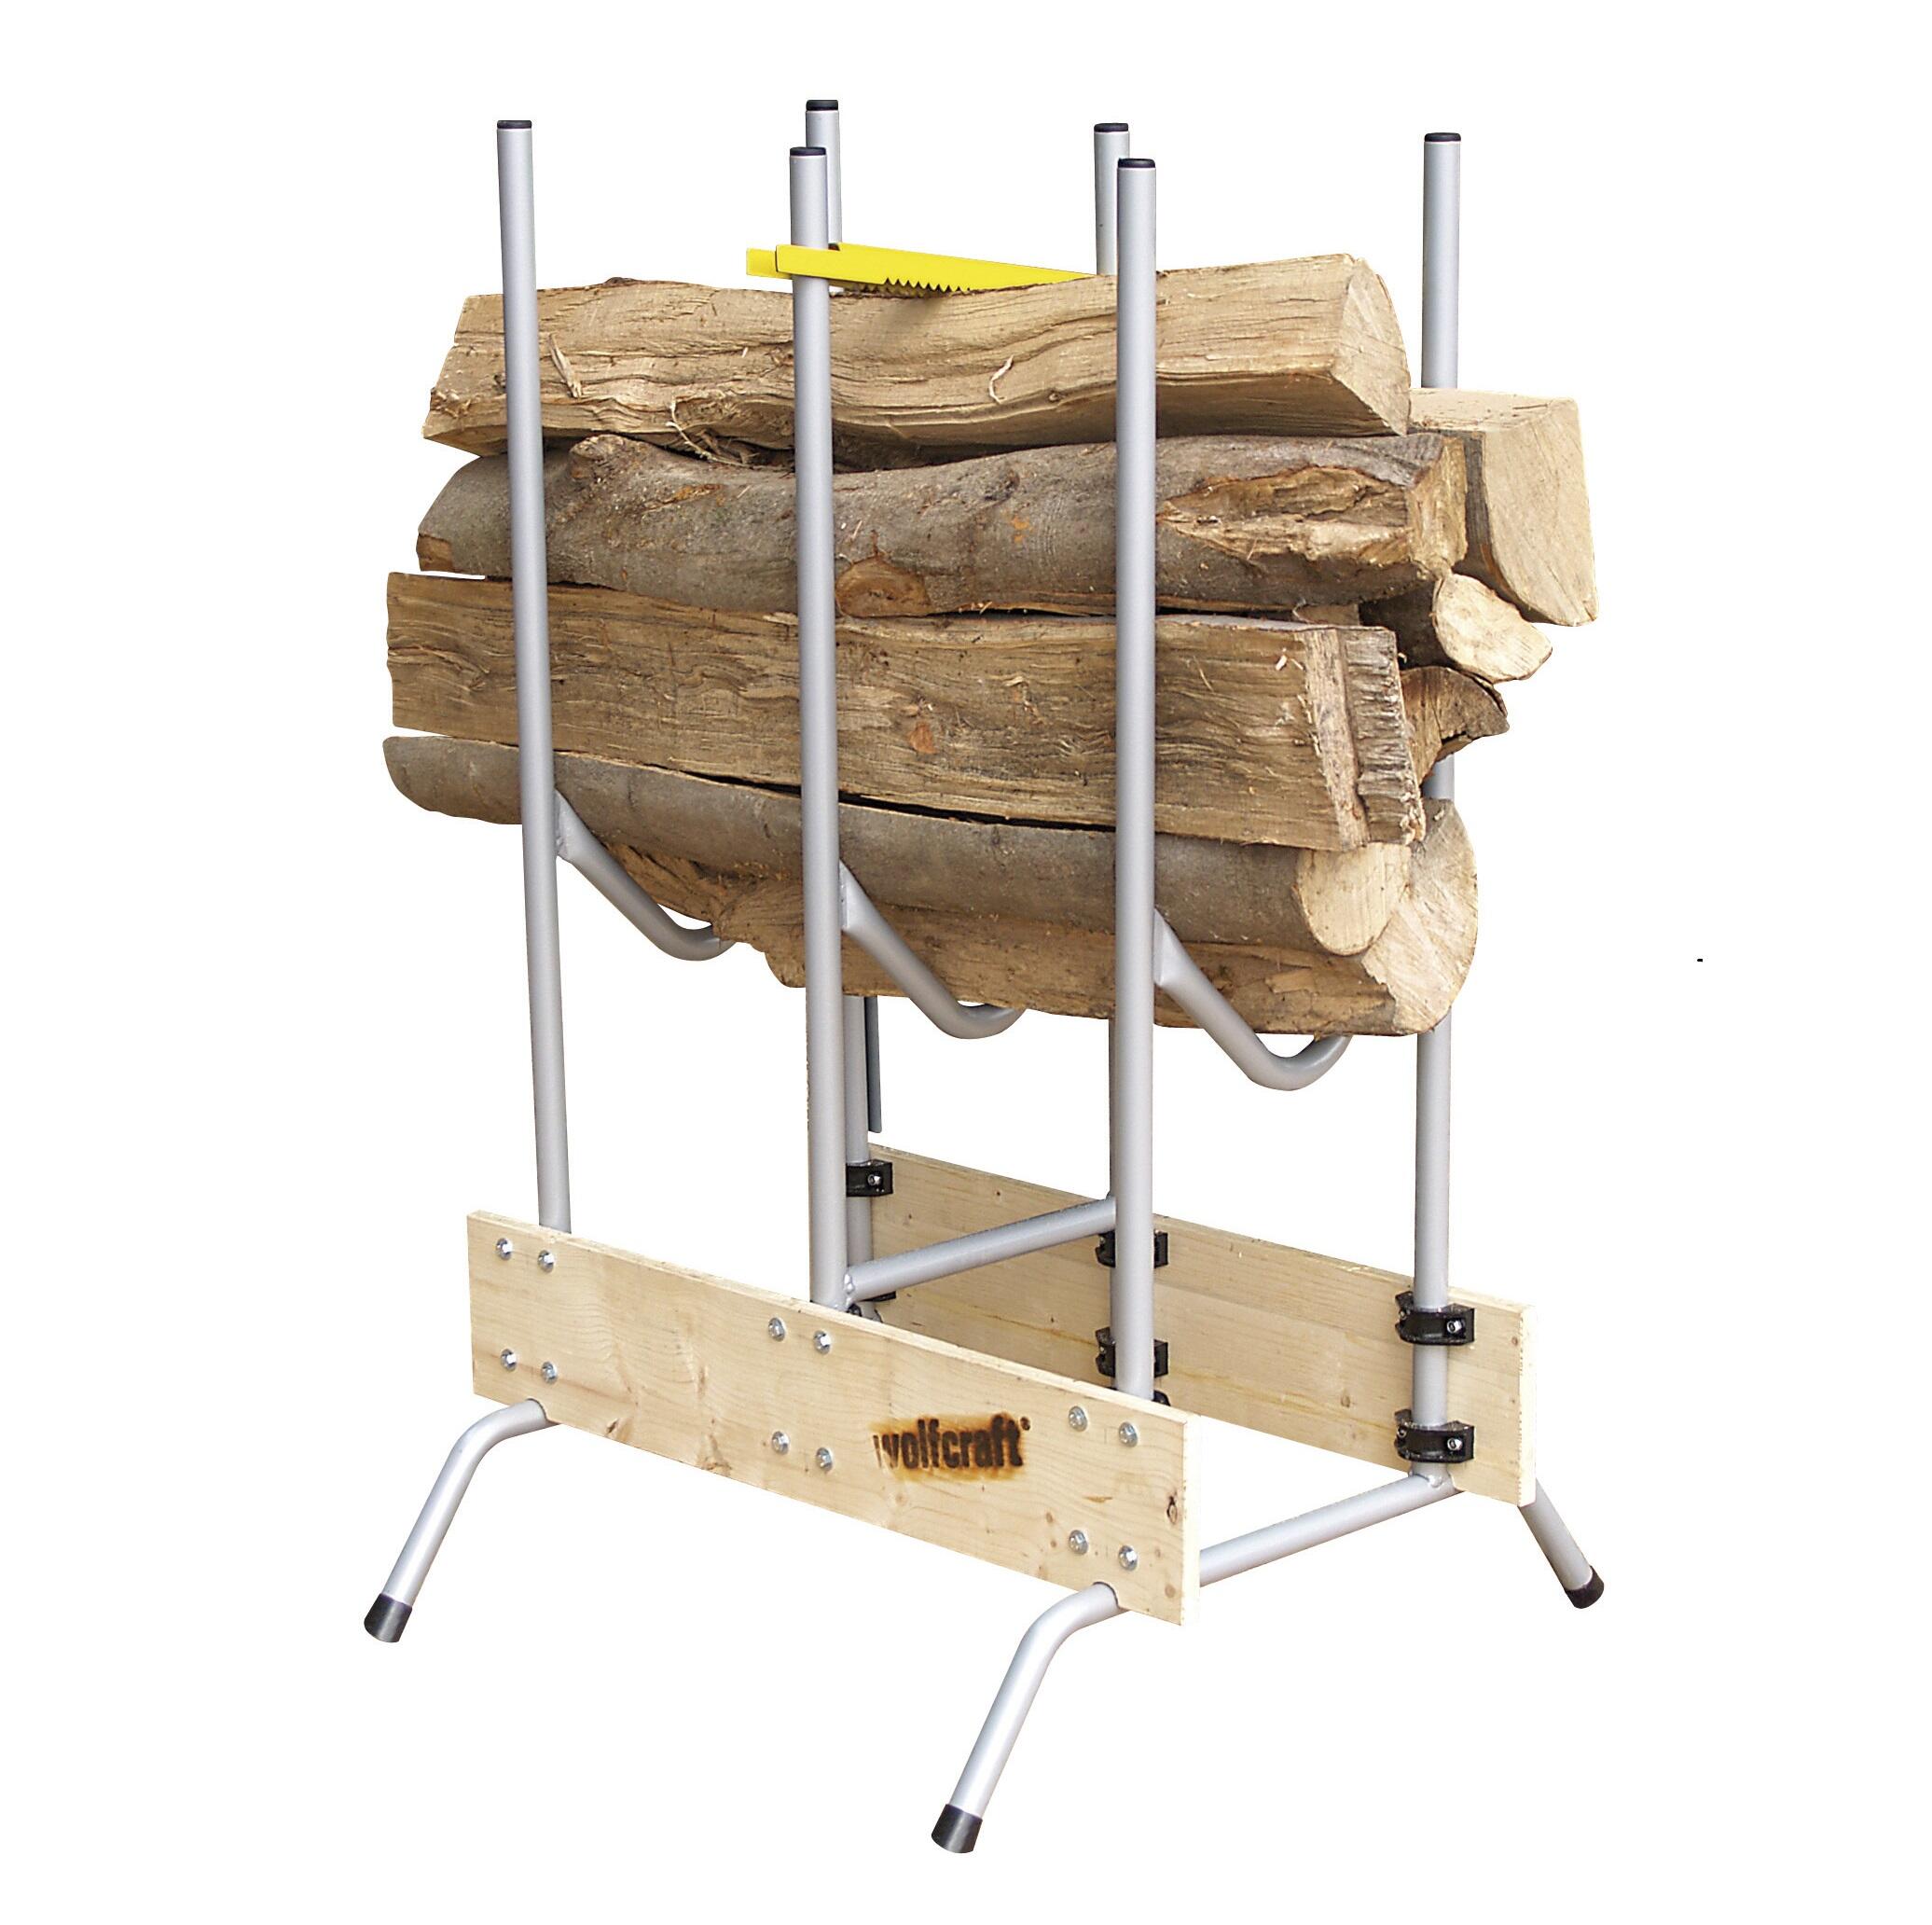 Chevalet de sciage - barre de blocage - scier grosse quantité de bois -  s'adaptent aux irrégularités du sol